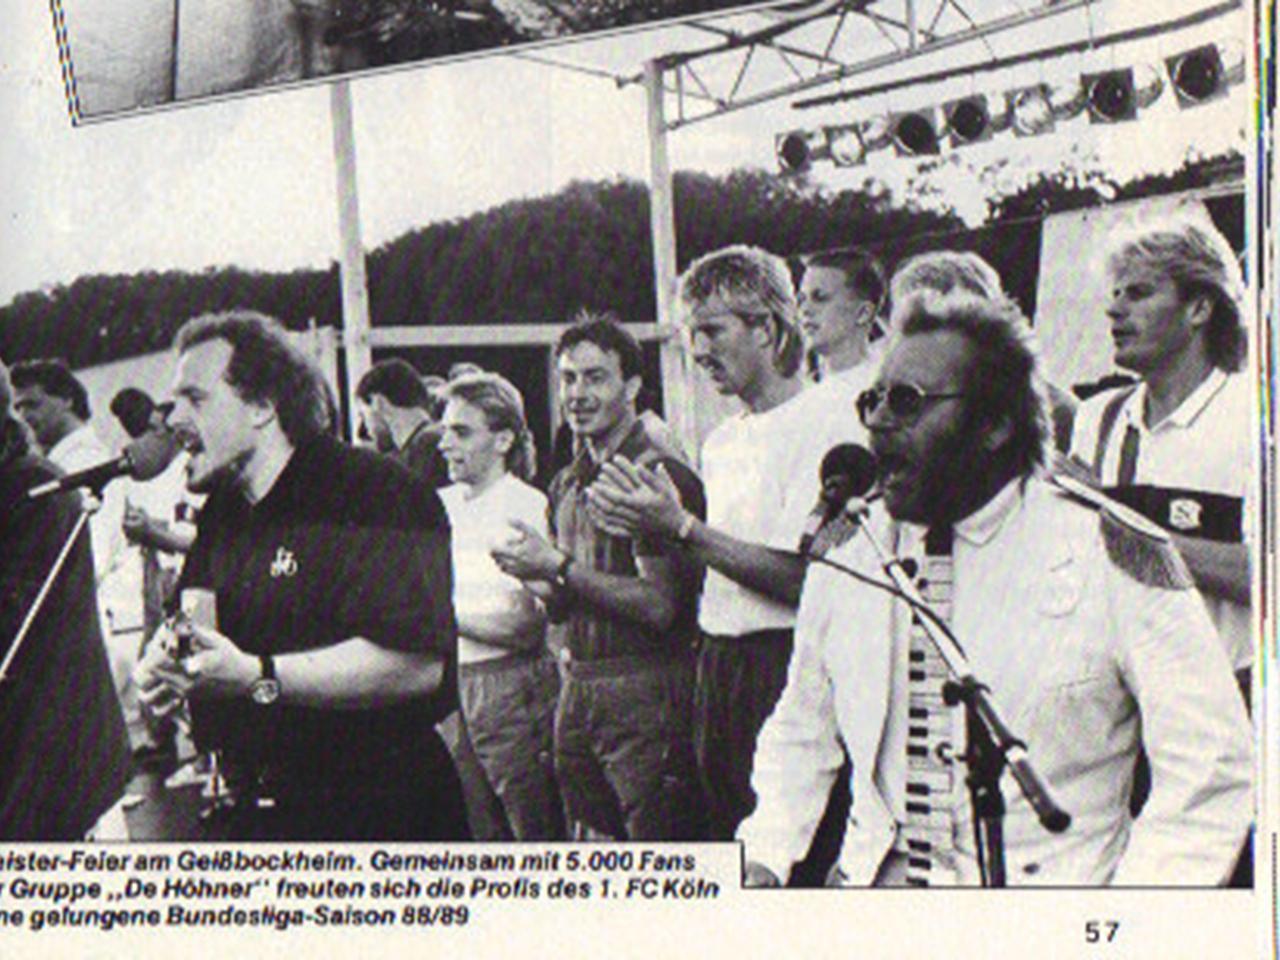 1989 Feier der deutschen Vizemeisterschaft am Geißbockheim